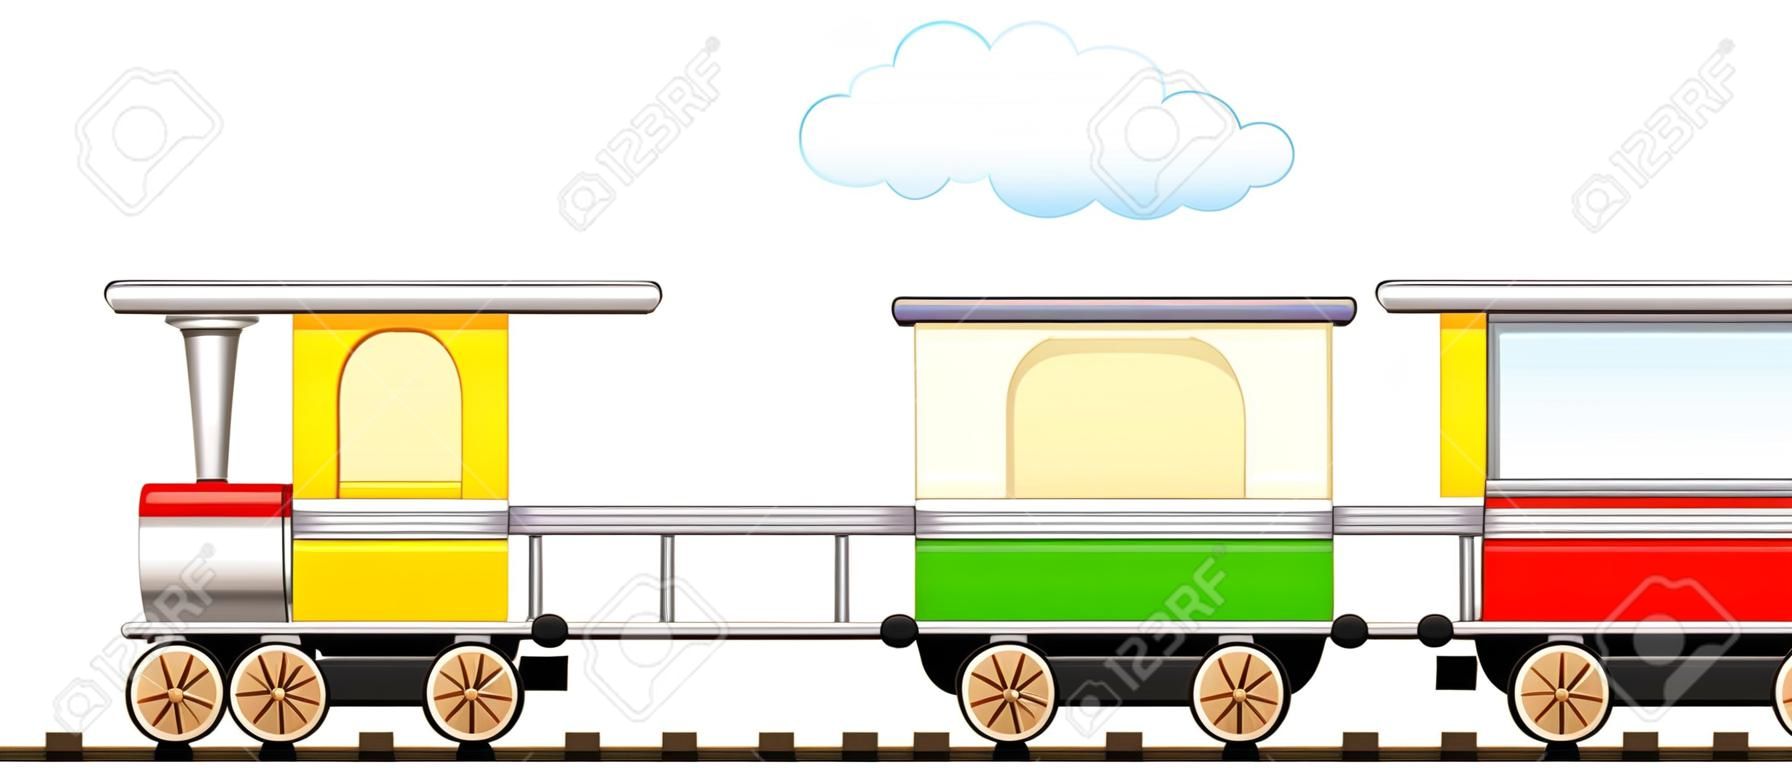 만화는 철도에서 화려한 마차와 귀여운 기차를 격리